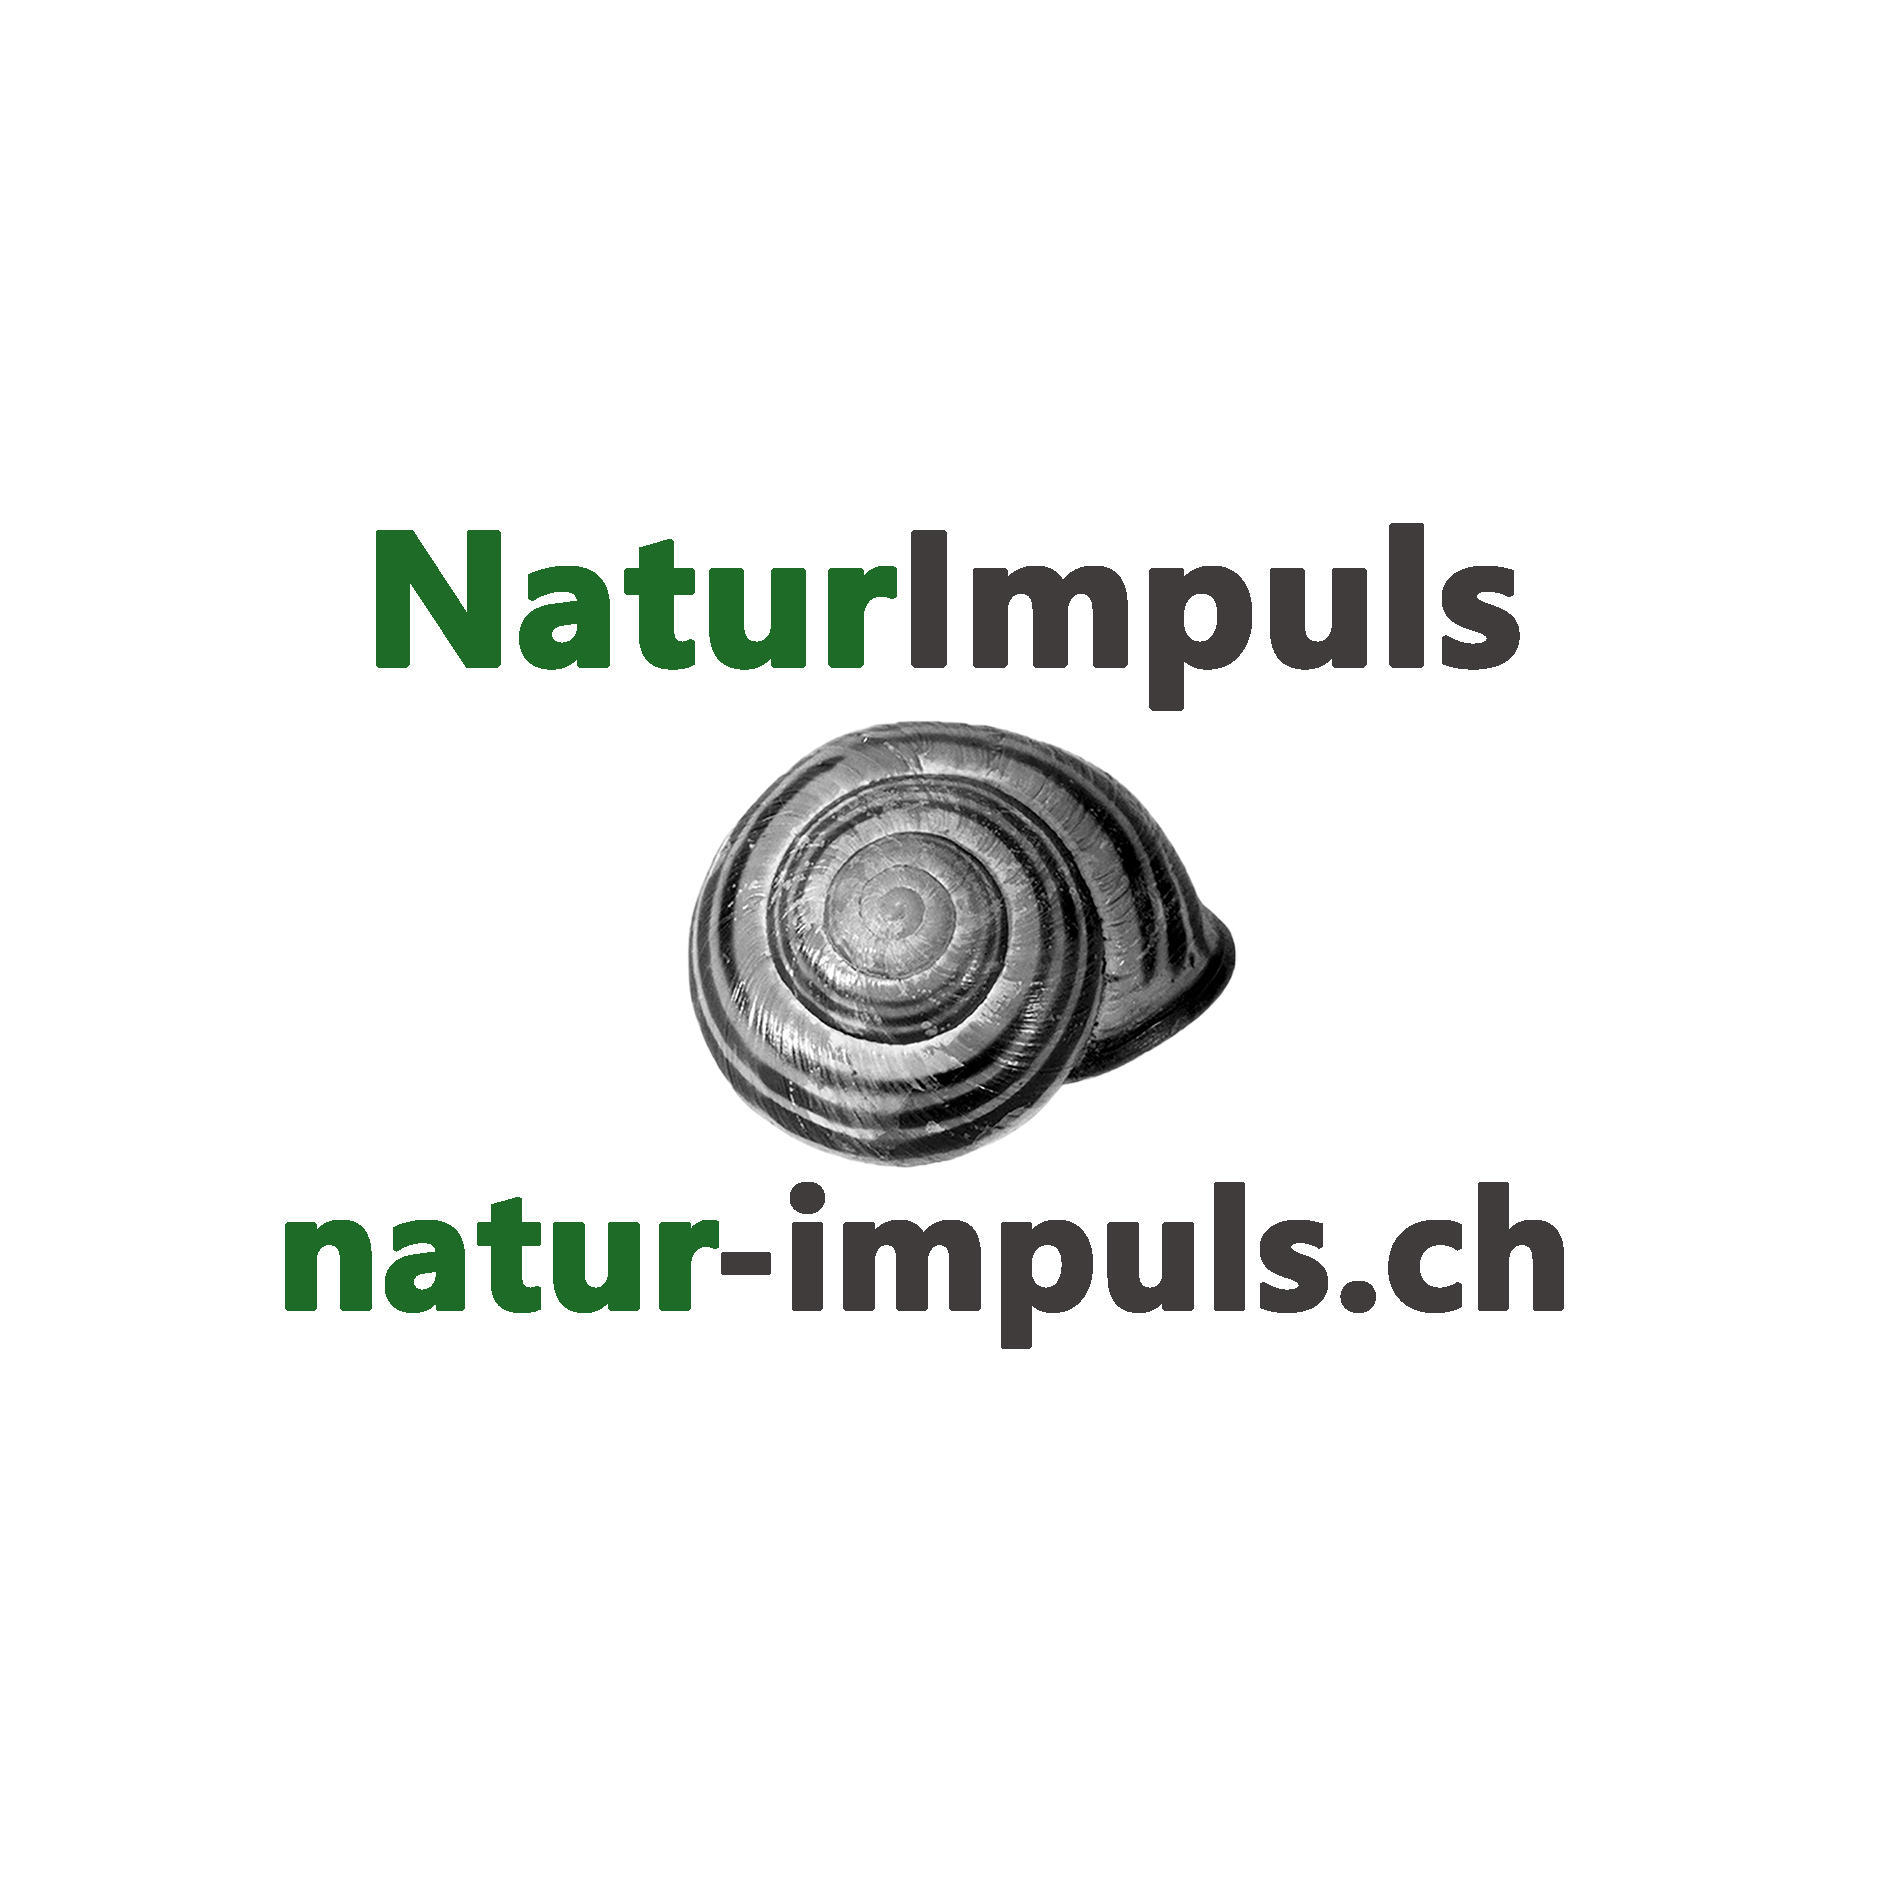 NaturImpuls Logo